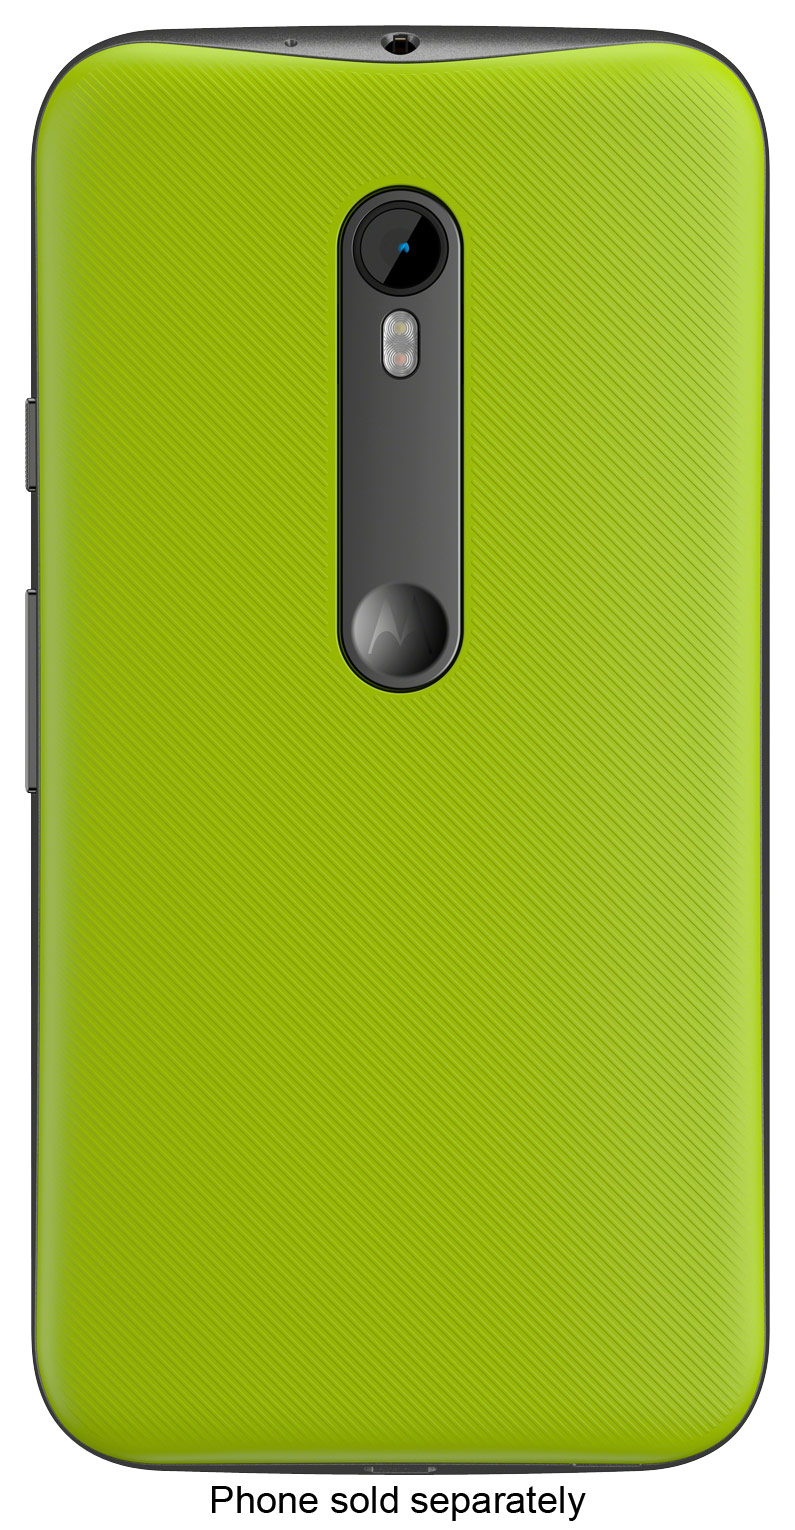 straal Eik Winkelier Best Buy: Motorola Shell Back Cover for MOTO G (3rd Gen.) Lemon lime 89817N